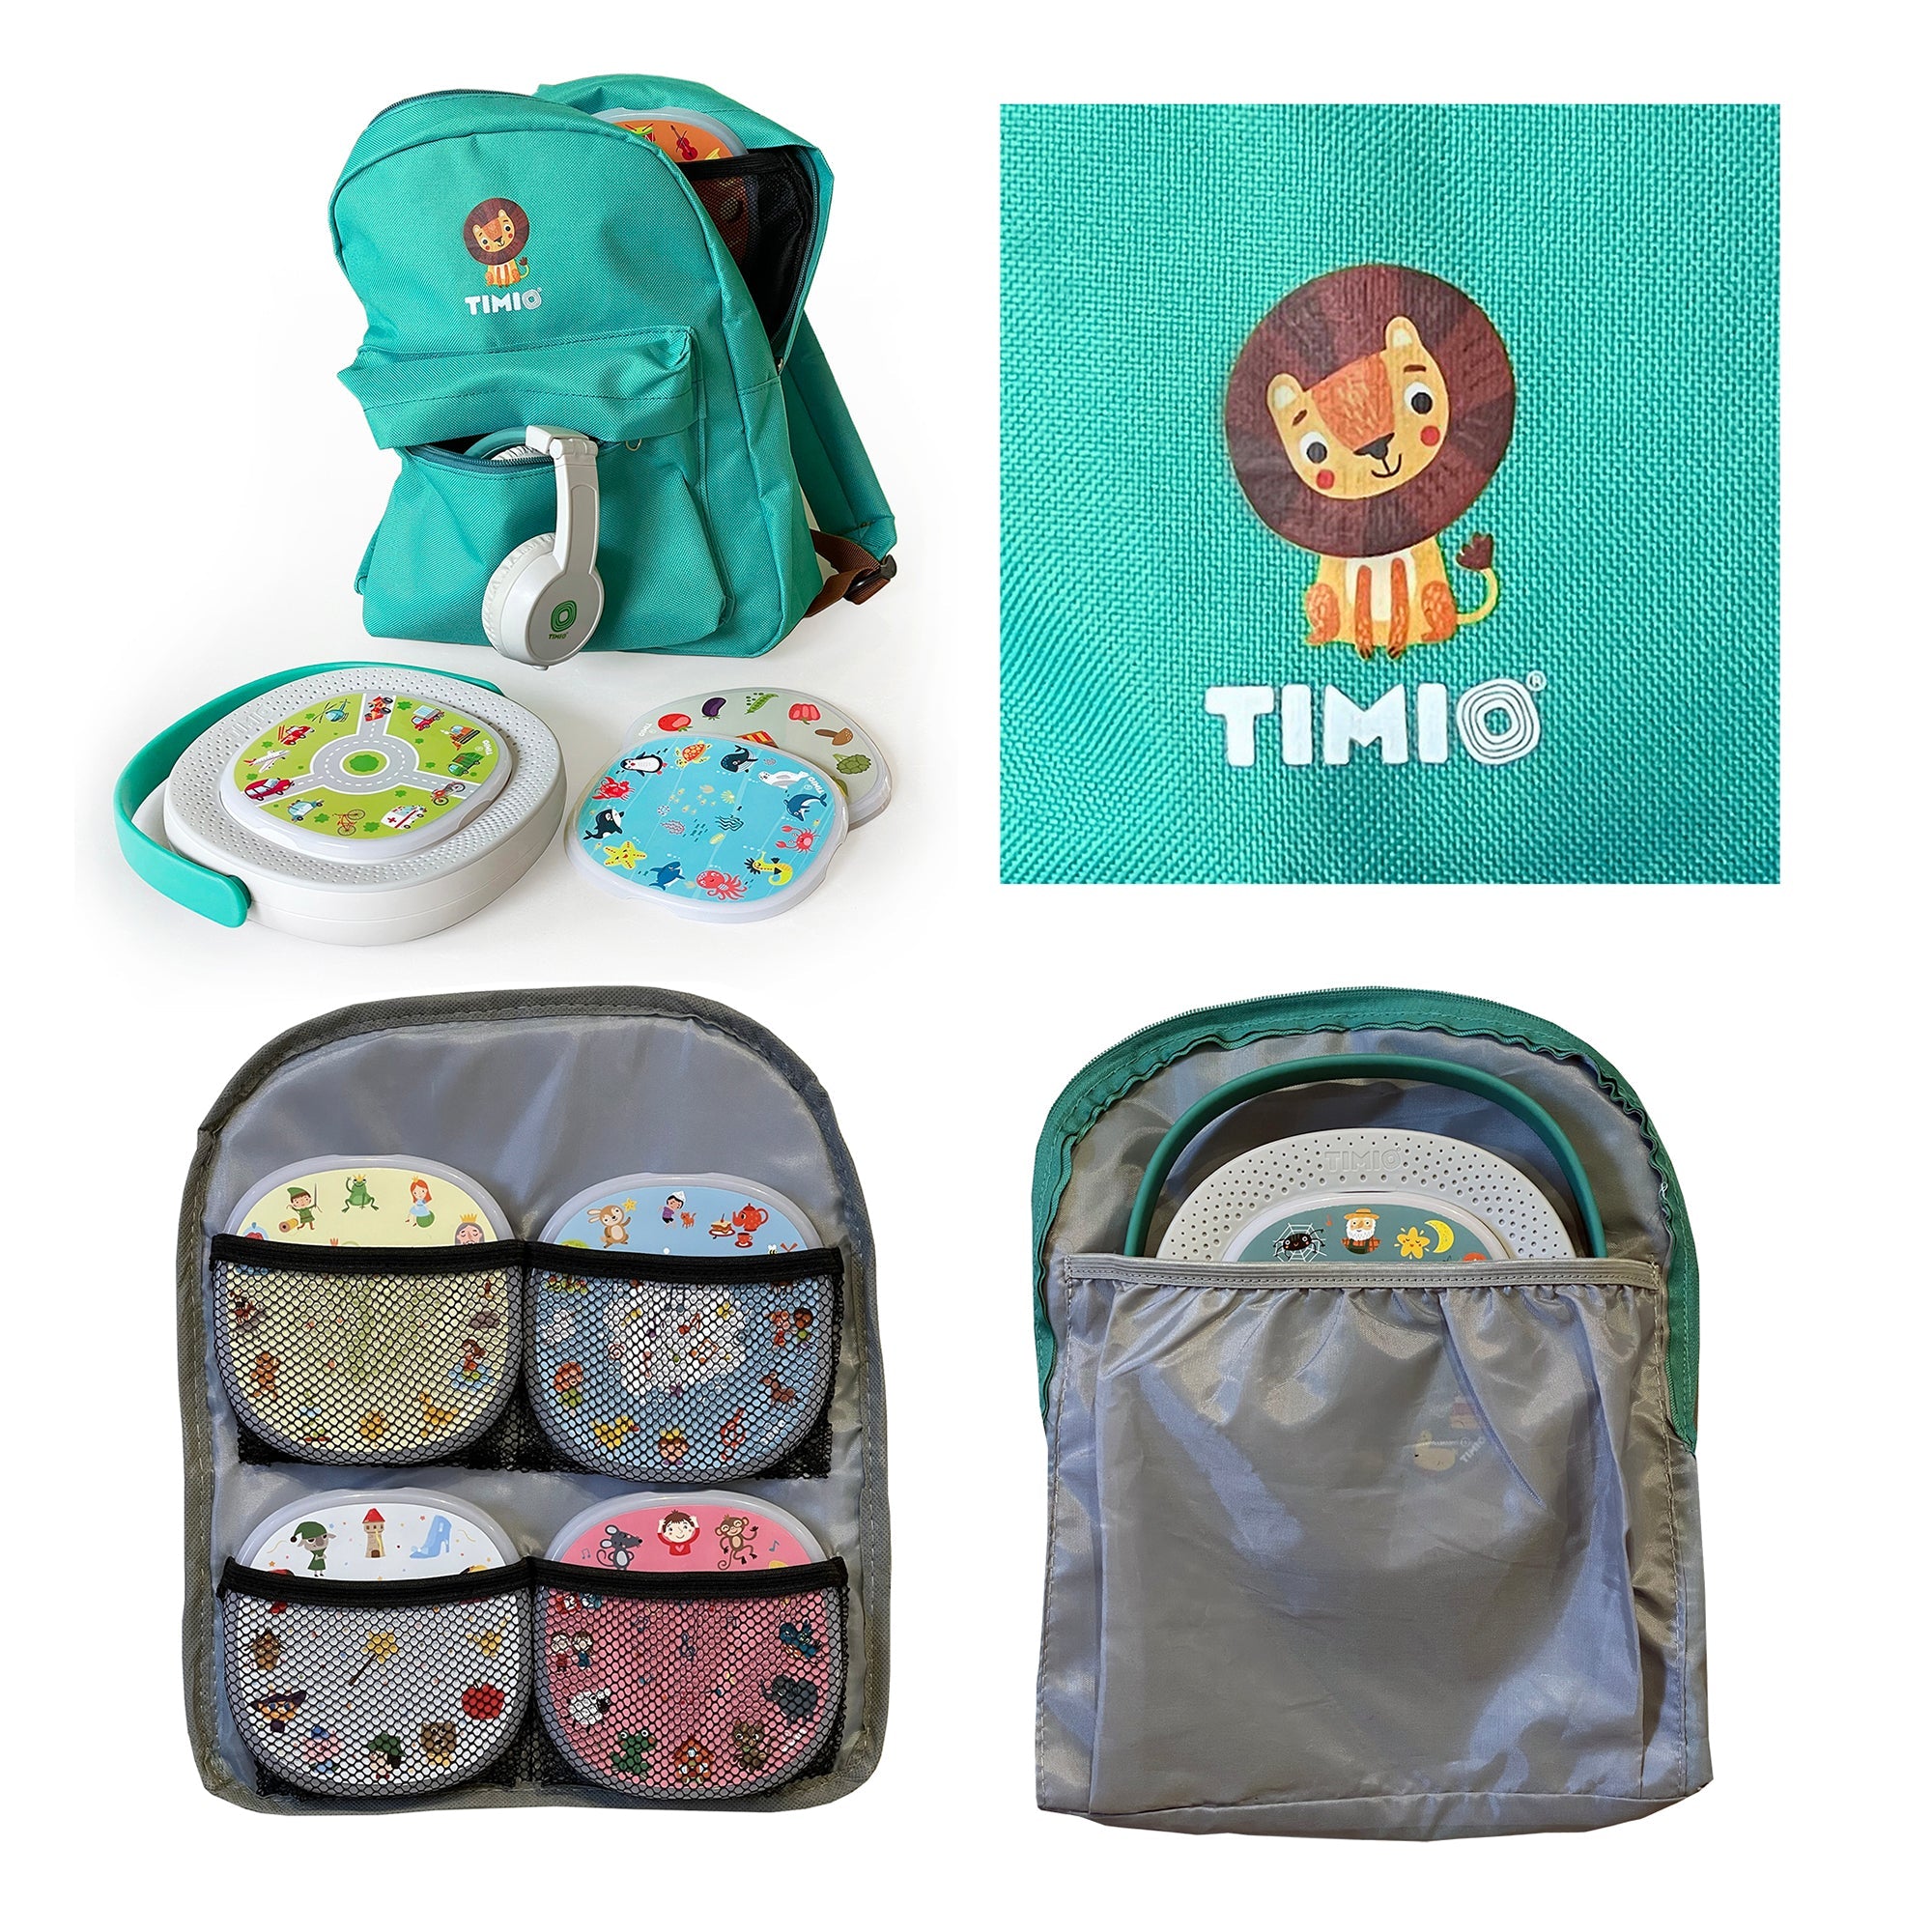 TIMIO: sac à dos de Timio pour le joueur et les disques